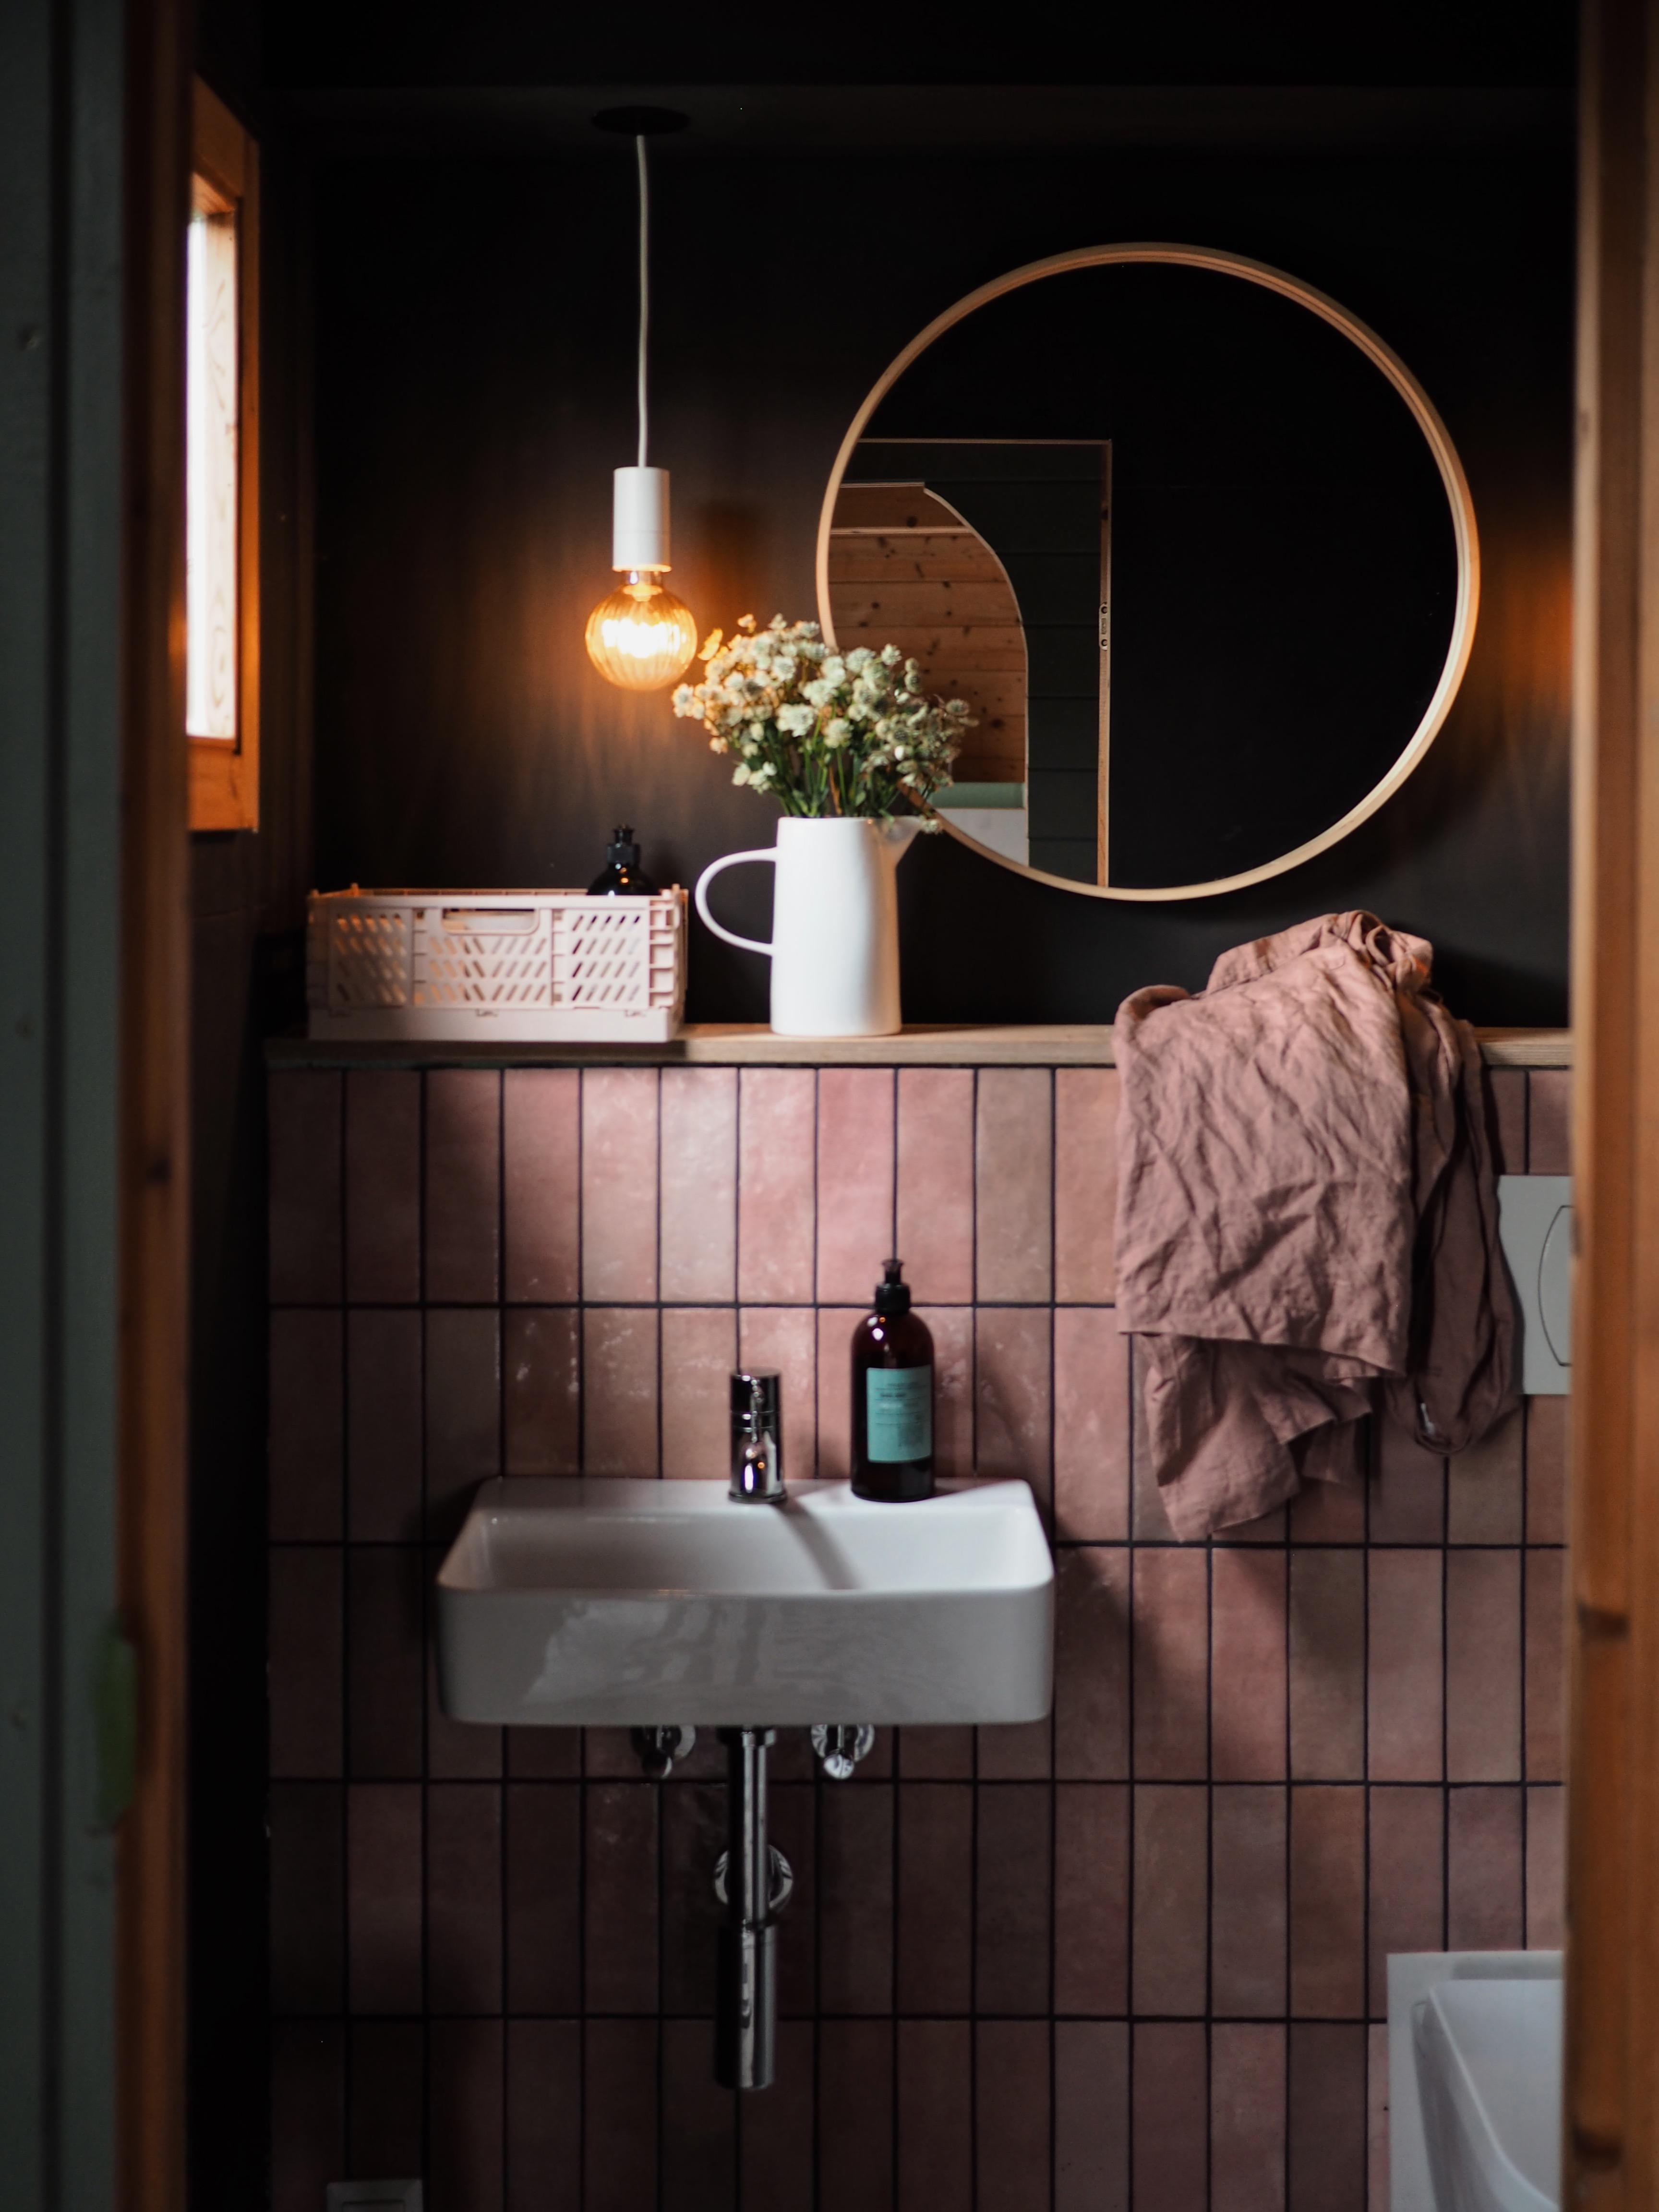 Badezimmer-Liebe en Detail! #badinspo #badezimmer #fliesen #pastelltöne #spiegel #gartenhaus 